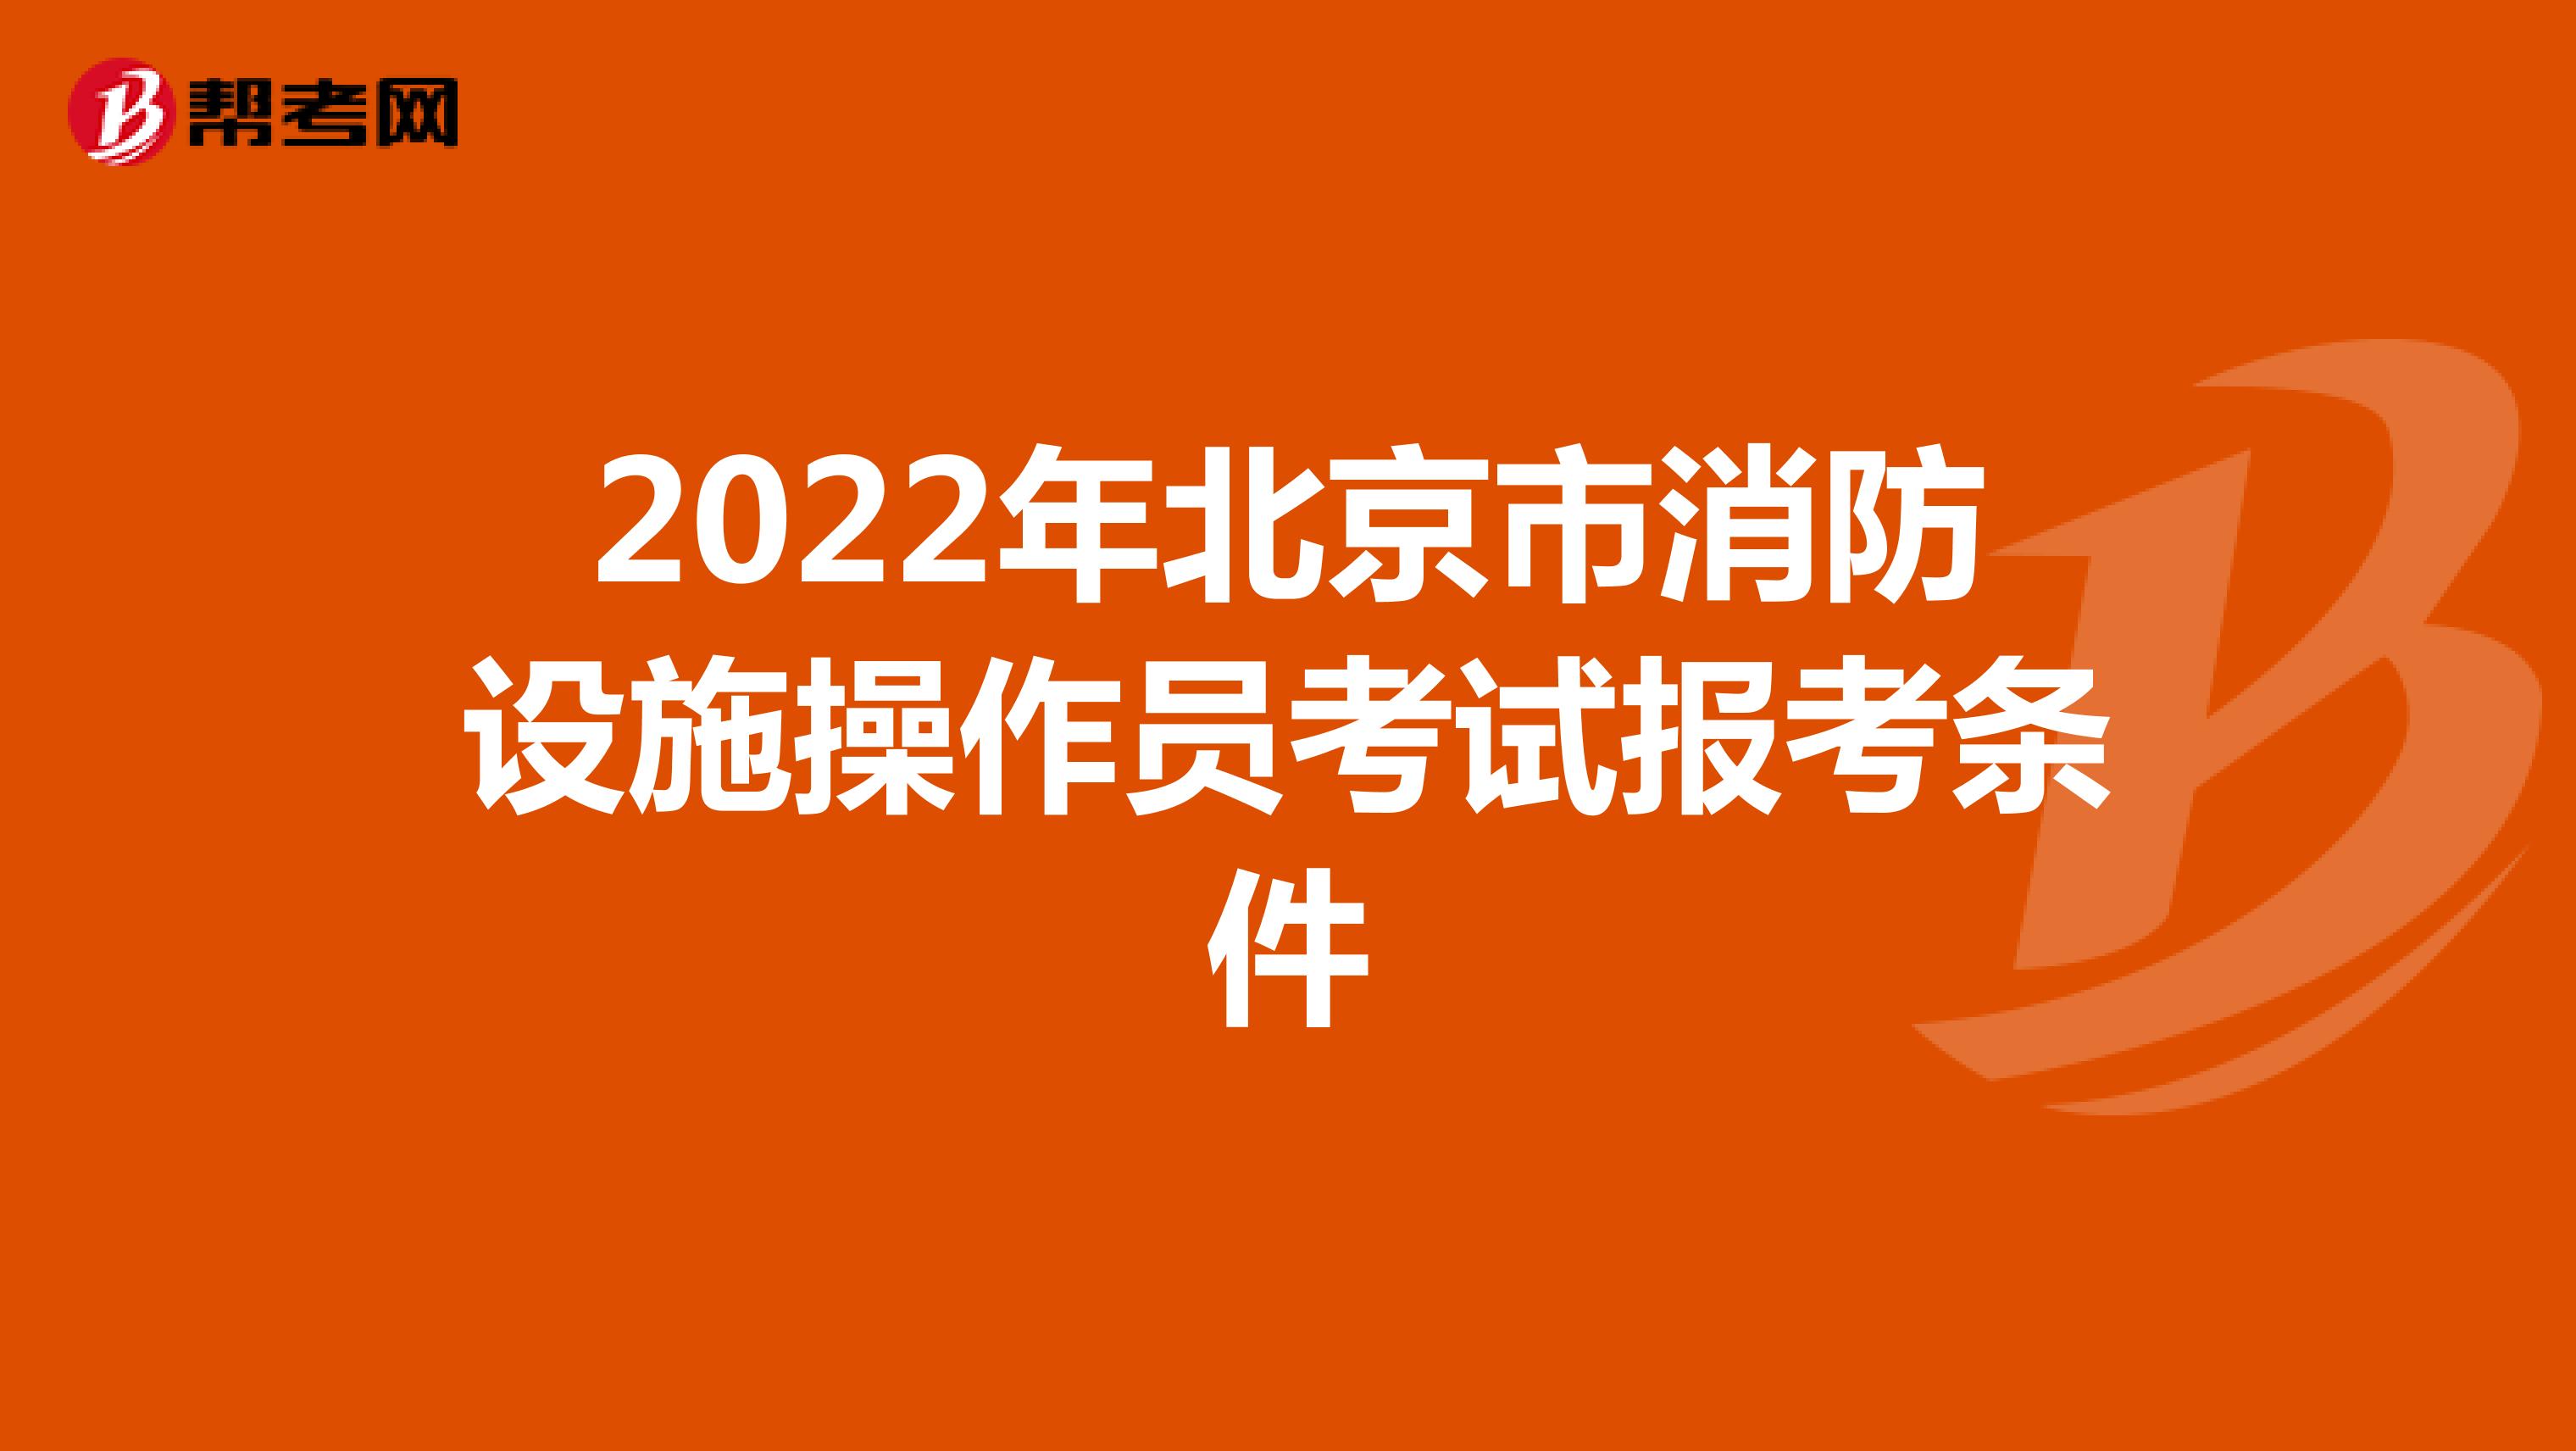 2022年北京市消防设施操作员考试报考条件